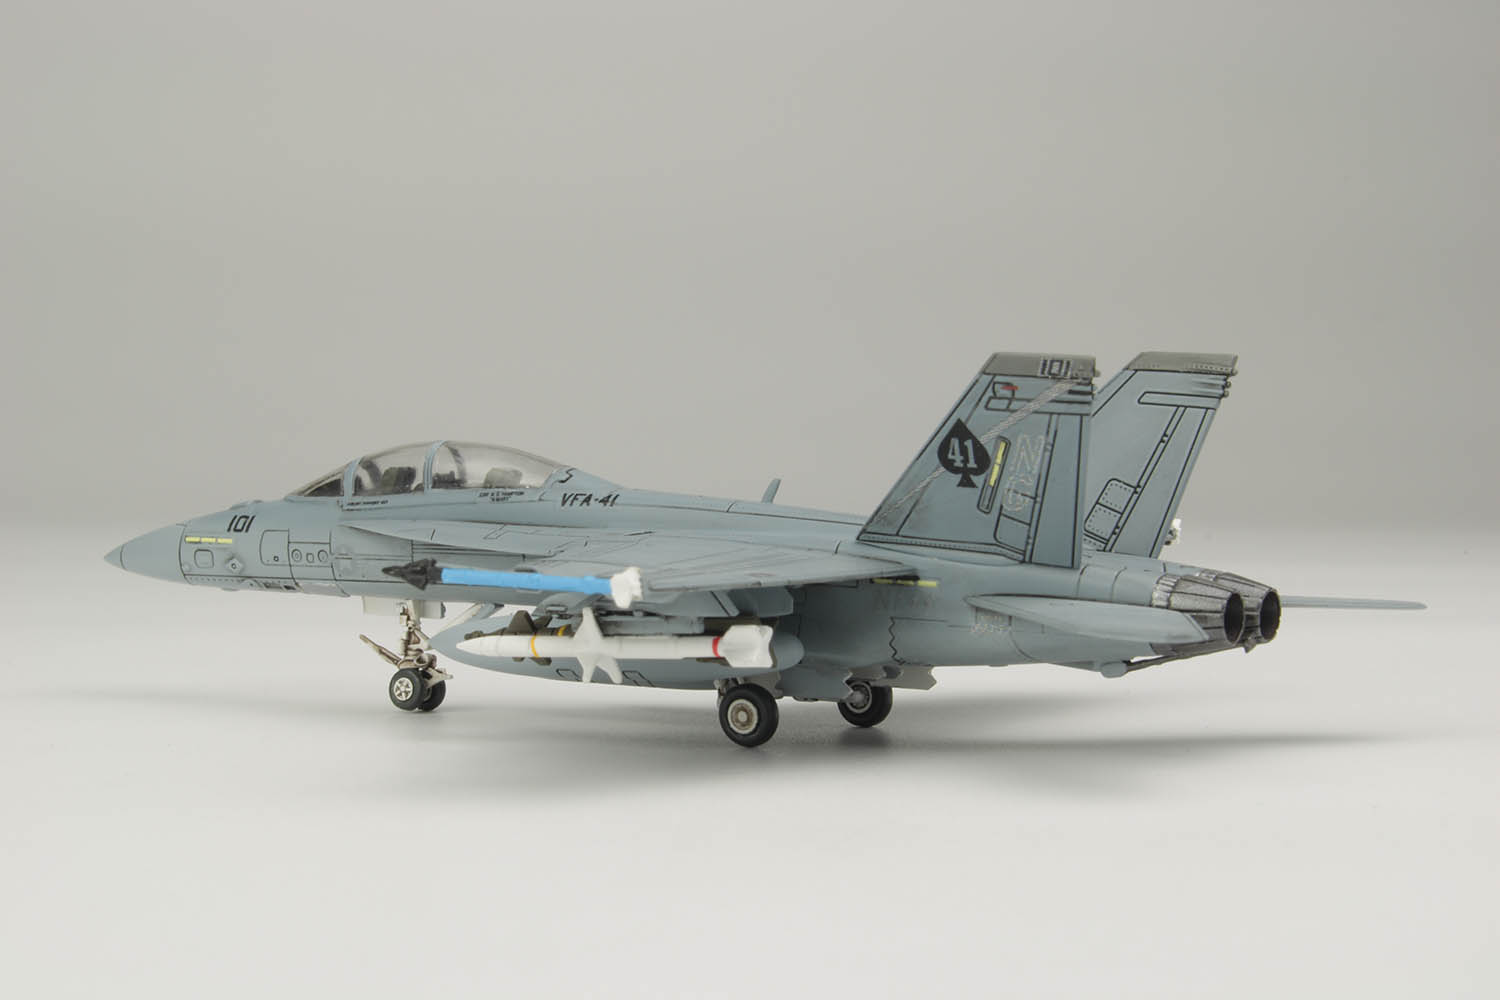 PLATZ 1/144 US Navy F/A-18E Super Hornet (Single-Seat) (2Kits)